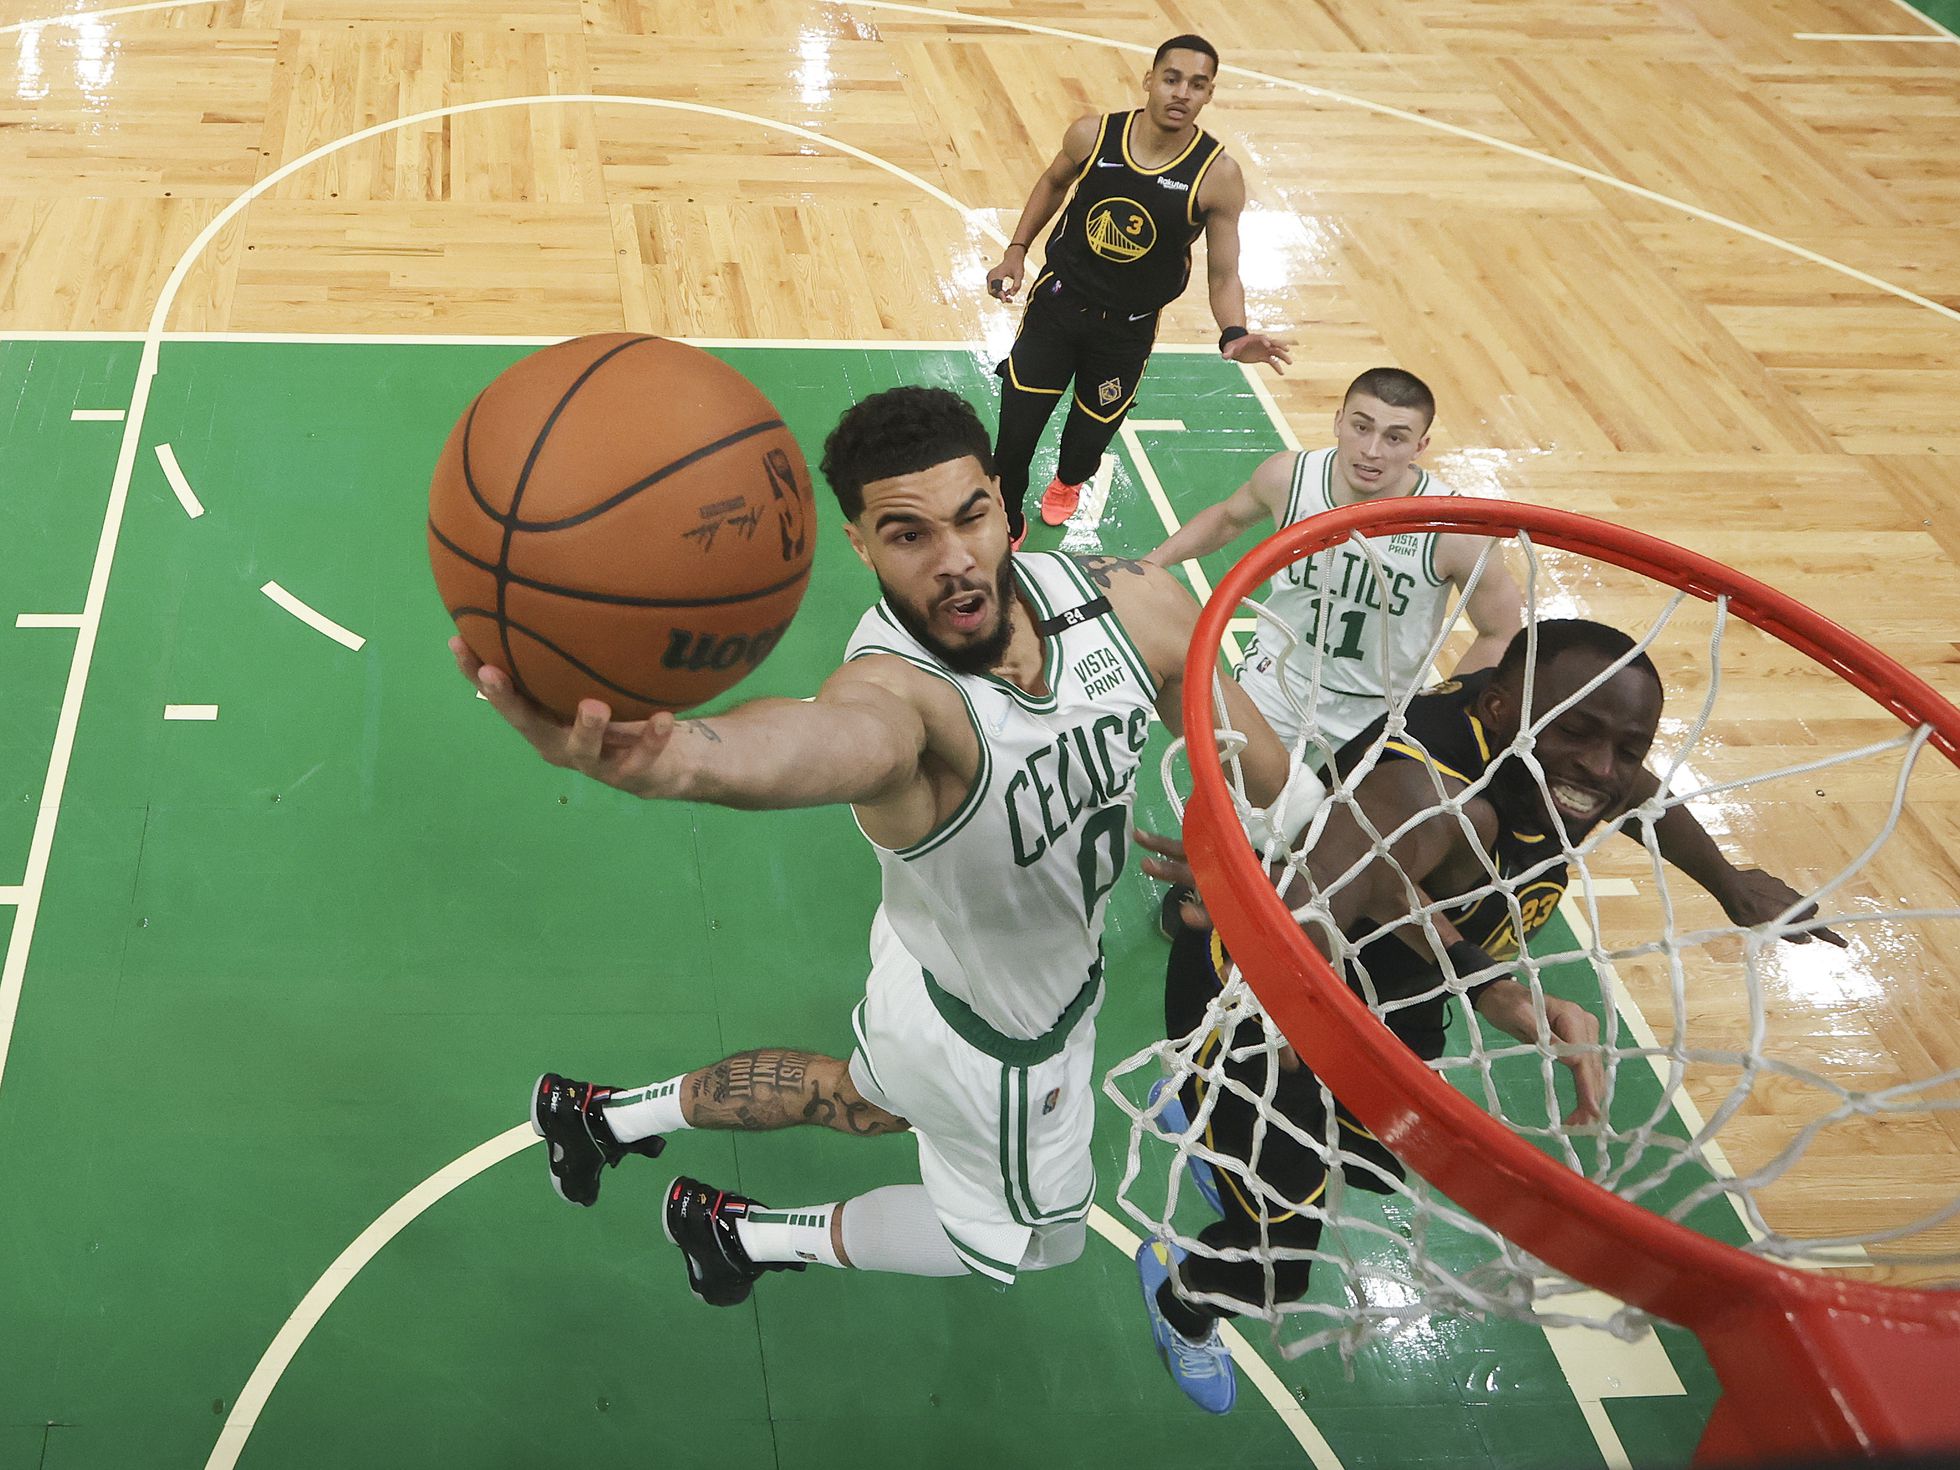 Finales NBA 2022 entre Warriors y Celtics: calendario de partidos y resultados | Deportes |